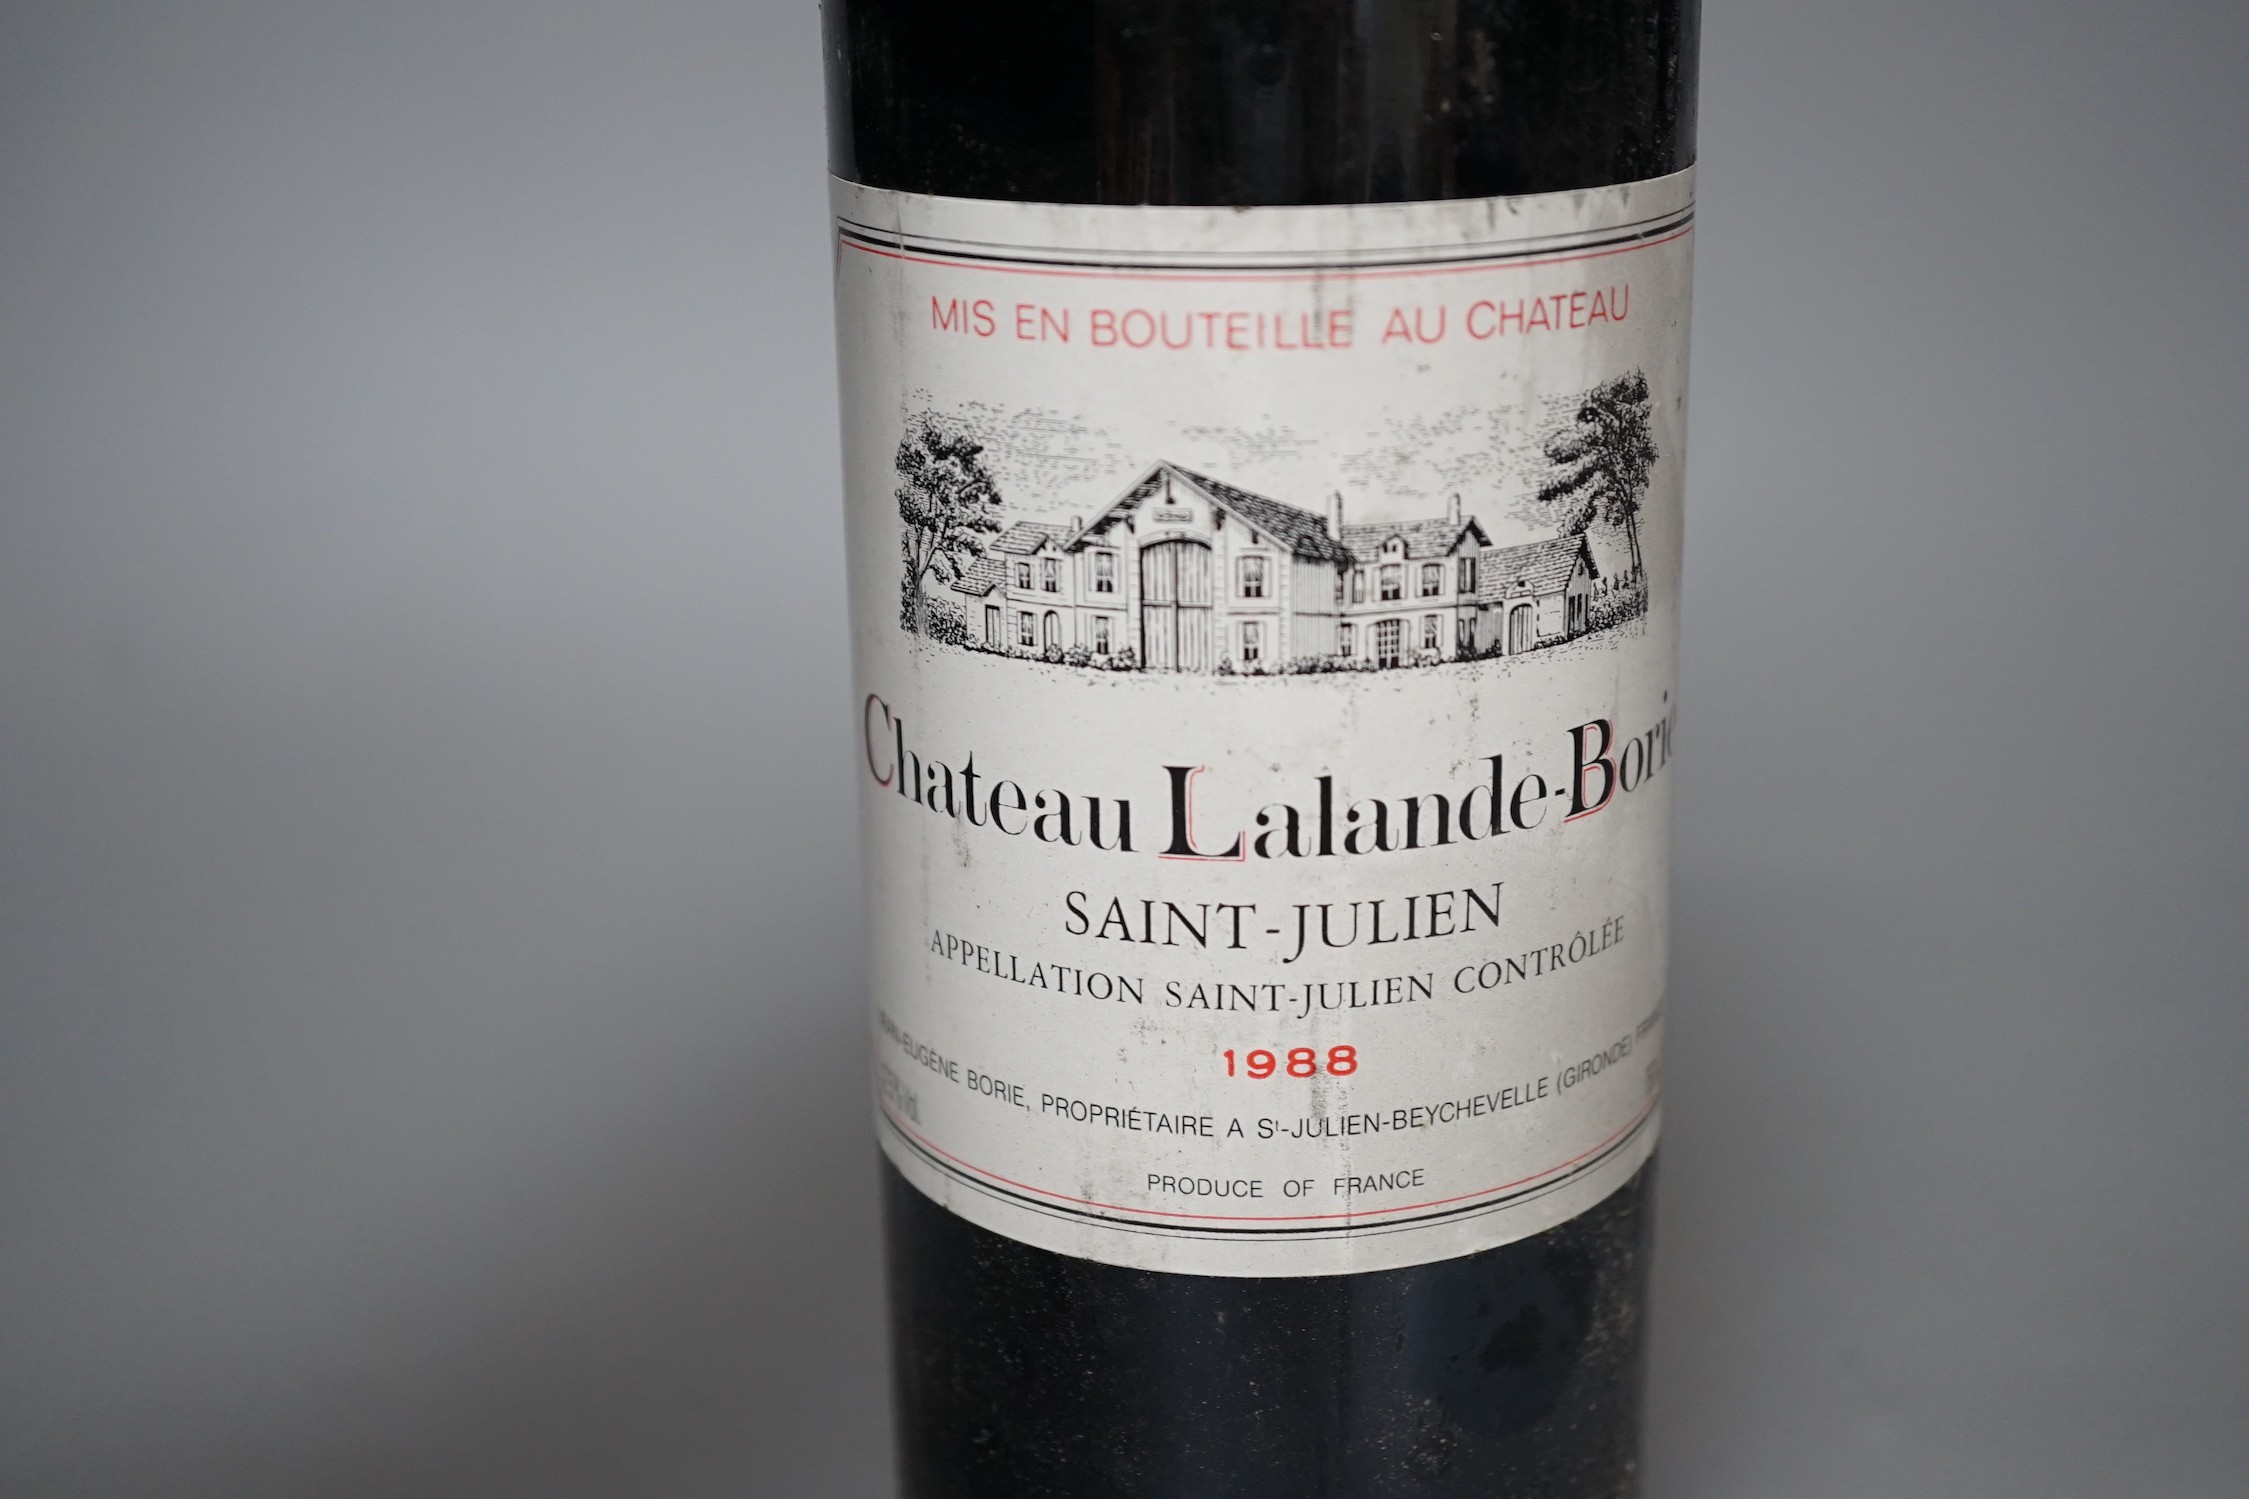 Eleven bottles of Chateau Lalande-Borie Saint Julien, seven 1985 and four 1988